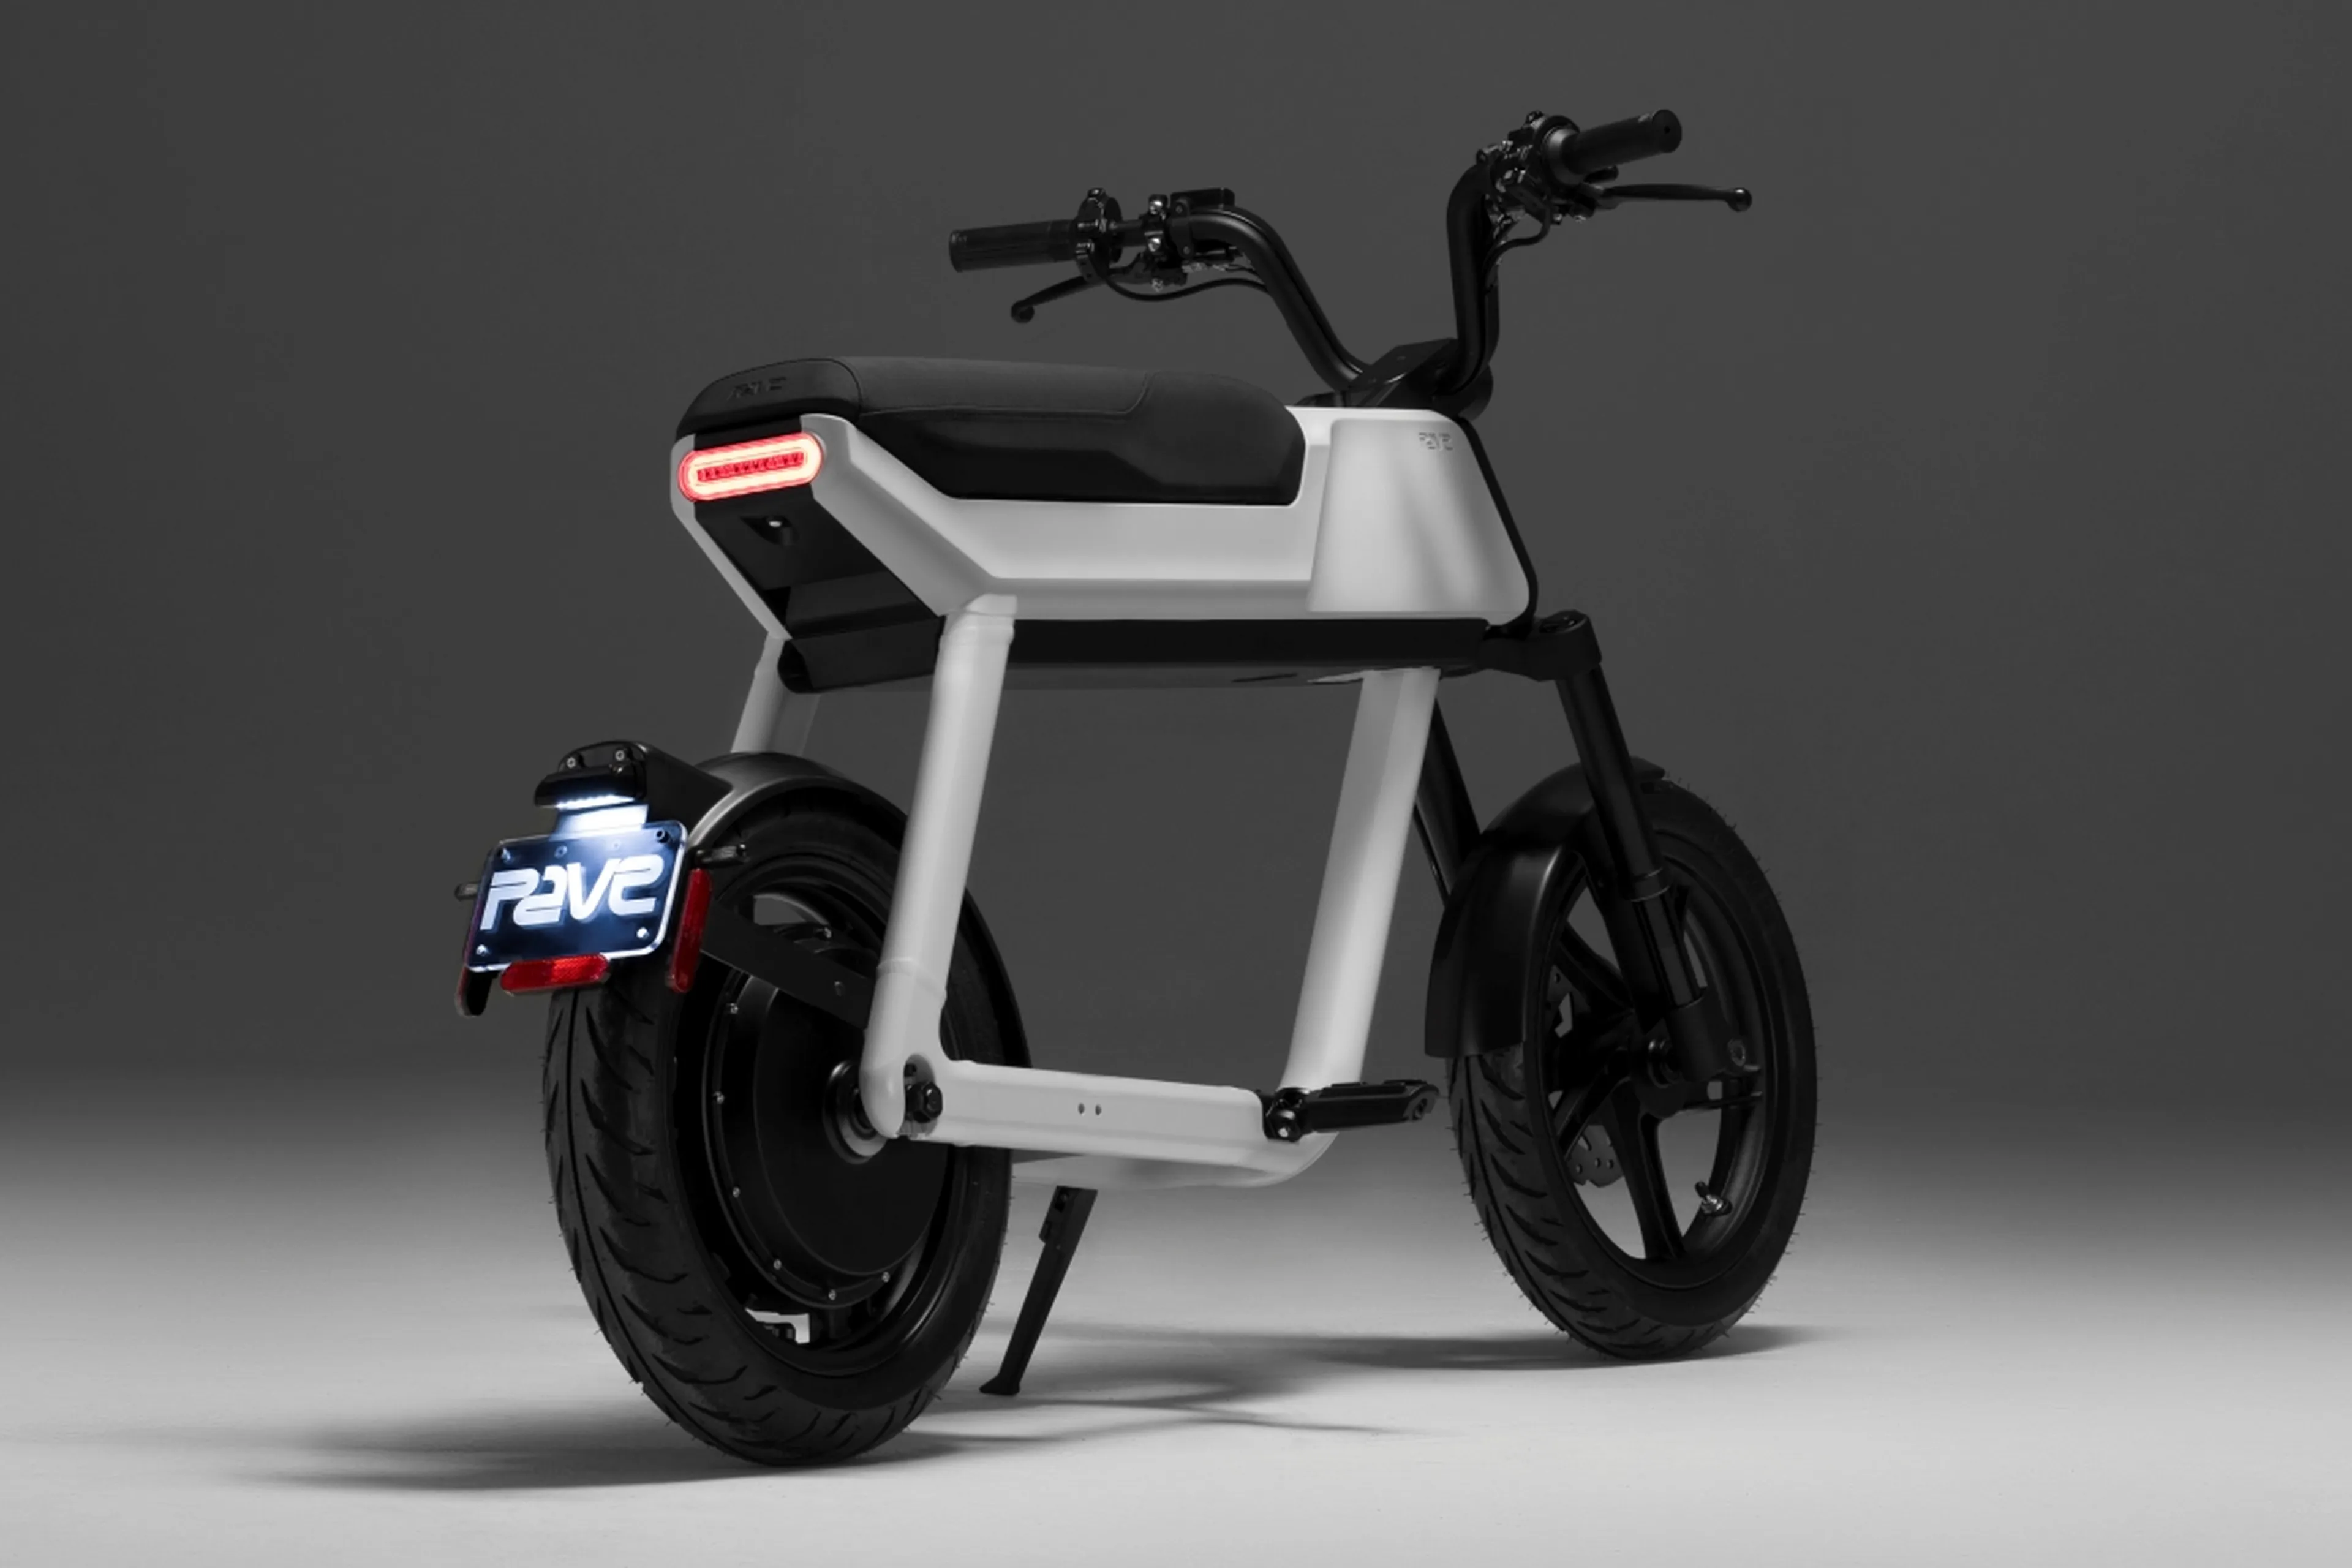 El scooter eléctrico Pave BK llega al mercado con un diseño único, buenas prestaciones y mucha tecnología